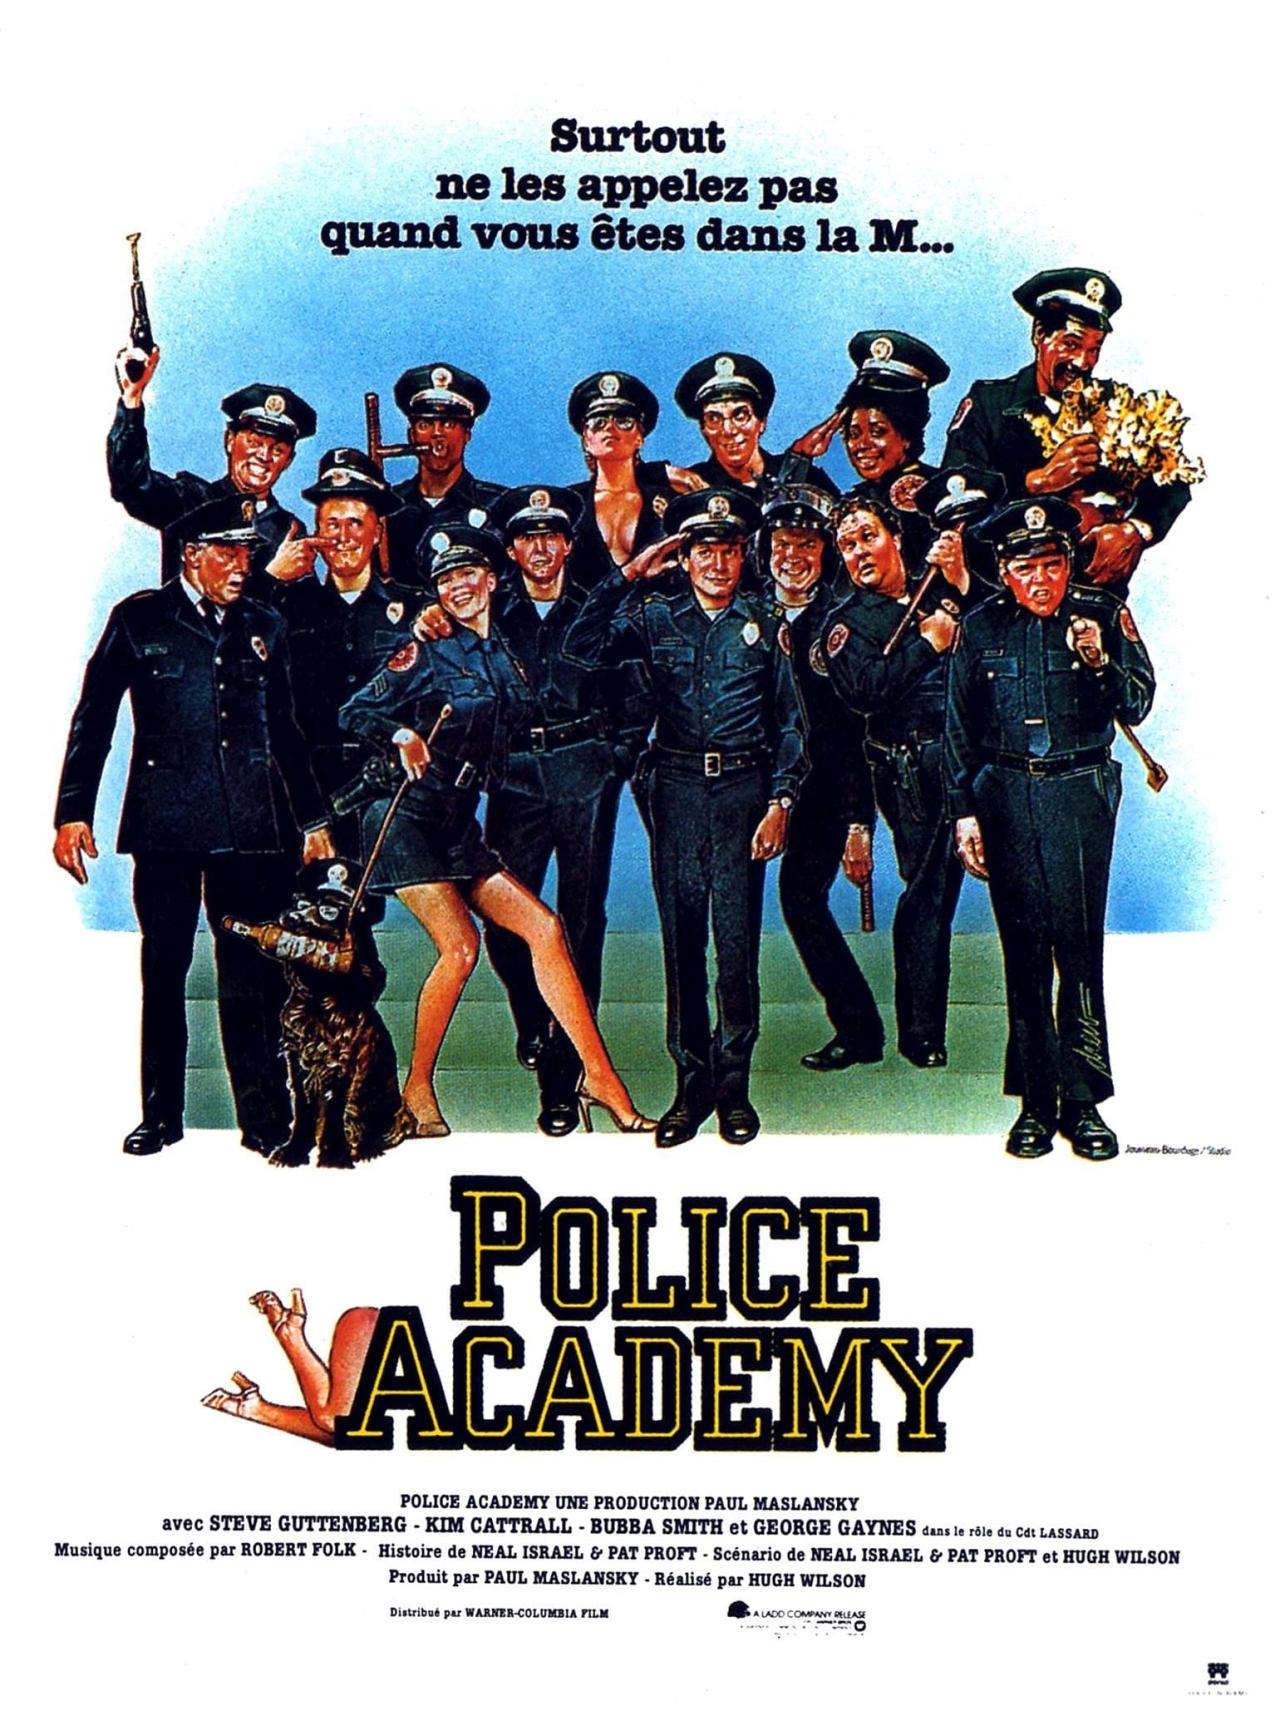 Police Academy est-il disponible sur Netflix ou autre ?